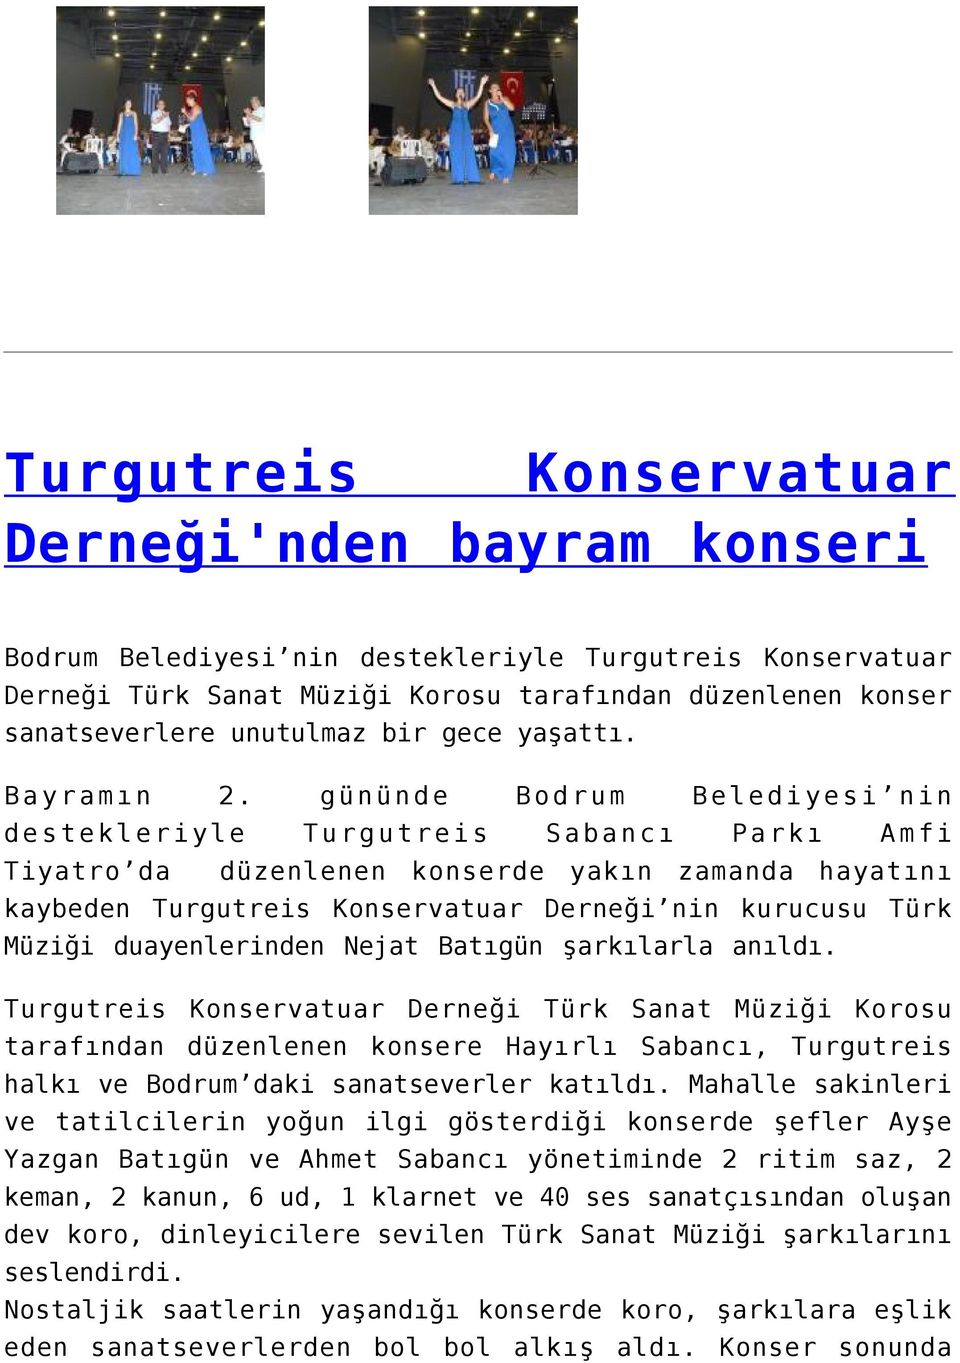 gününde Bodrum Belediyesi nin destekleriyle Turgutreis Sabancı Parkı Amfi Tiyatro da düzenlenen konserde yakın zamanda hayatını kaybeden Turgutreis Konservatuar Derneği nin kurucusu Türk Müziği